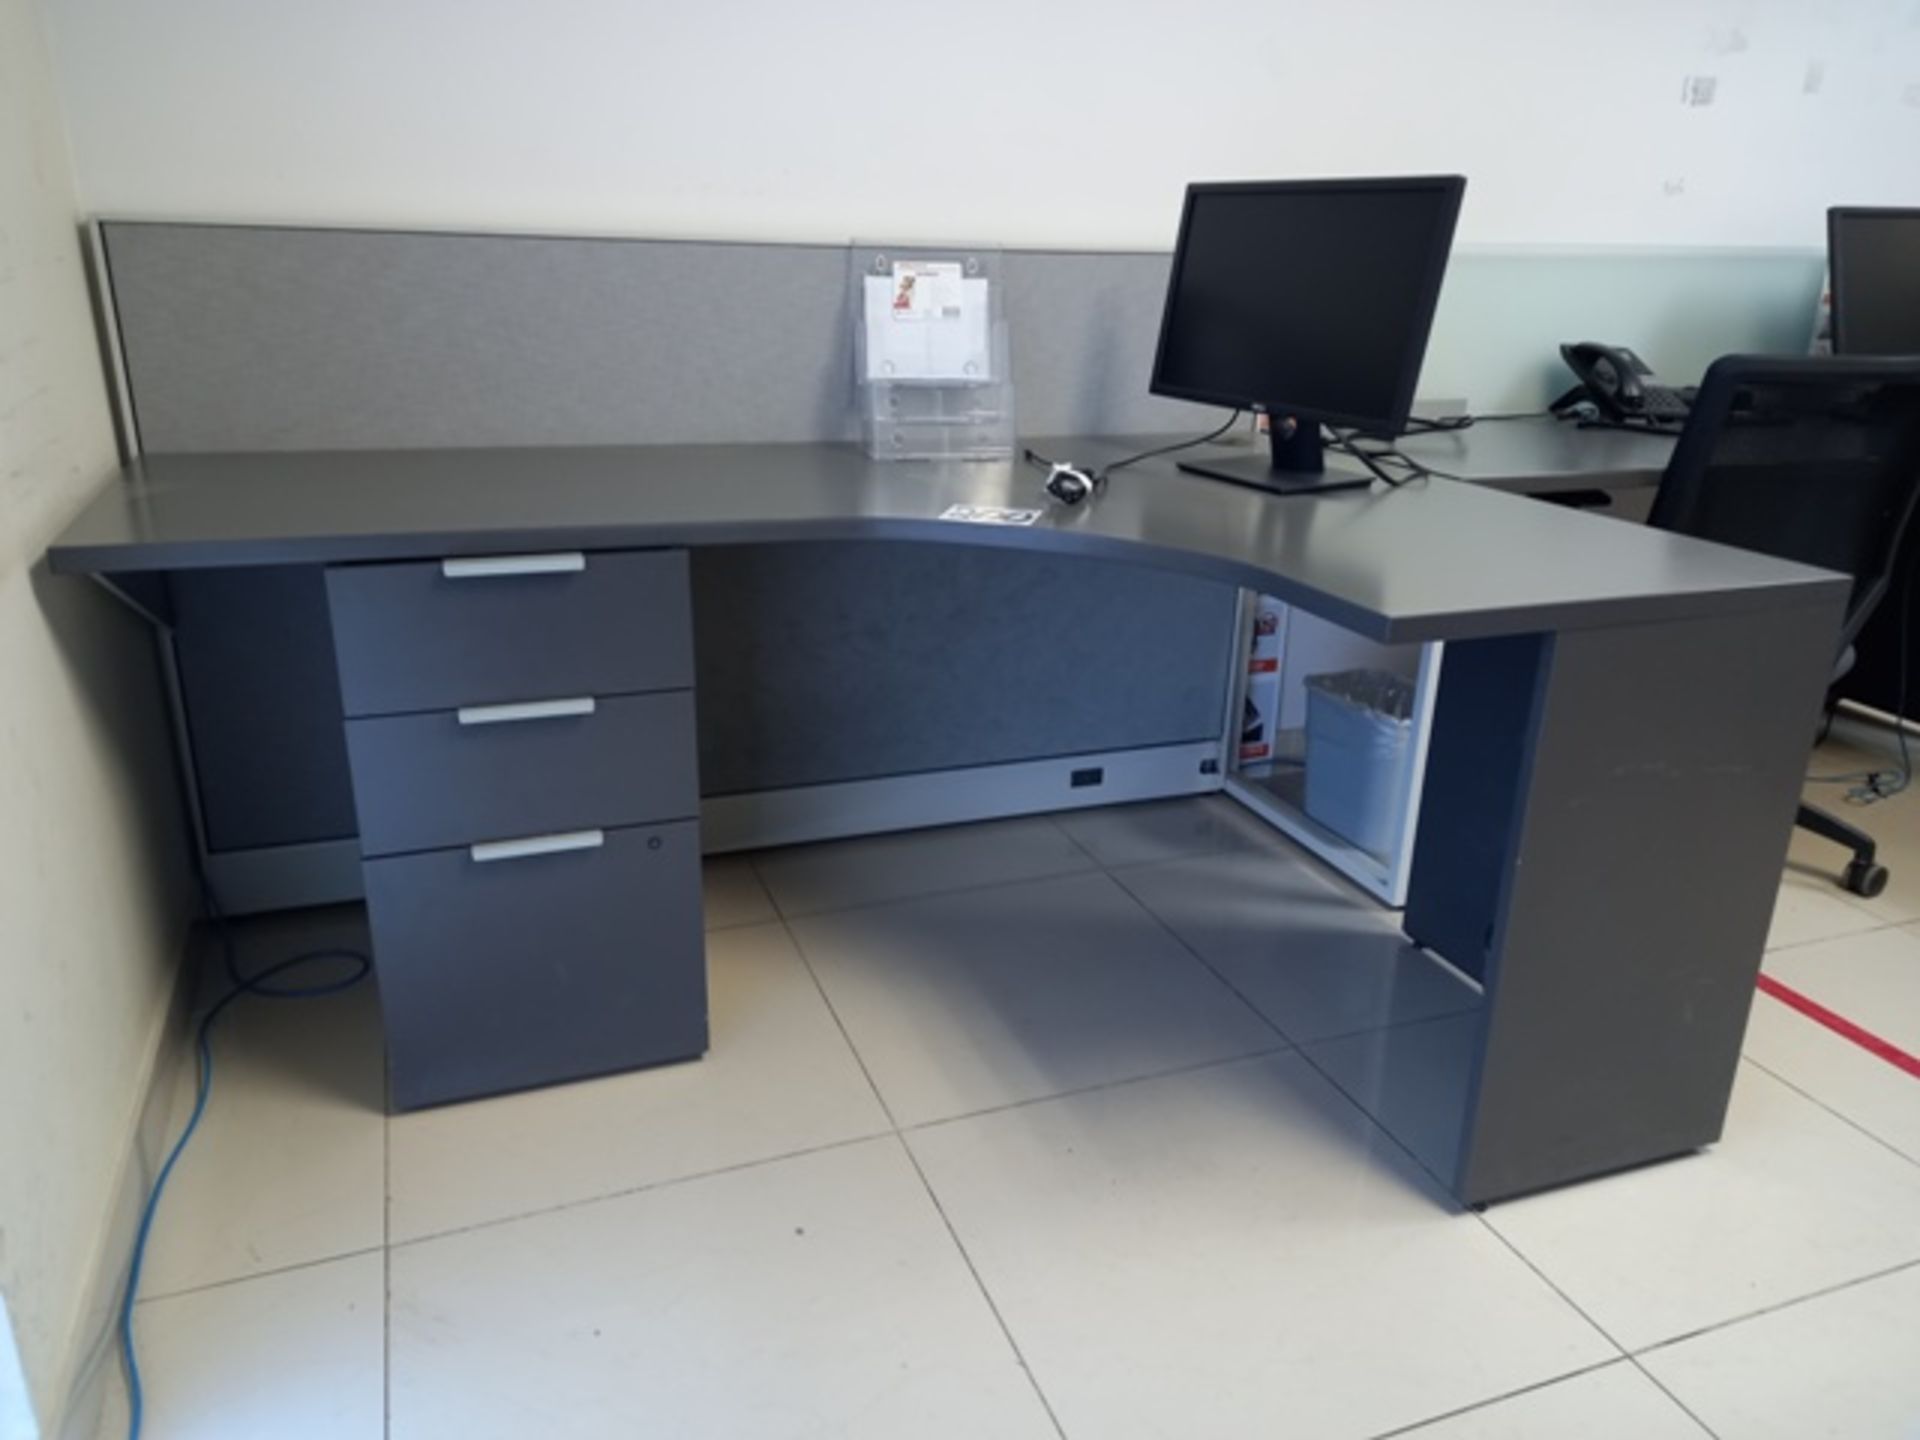 (44) Office Furniture Consisting Of: (1) 60 Inch Samsung TV, (6) L Desks, (6) Simple Desks & more - Image 3 of 25